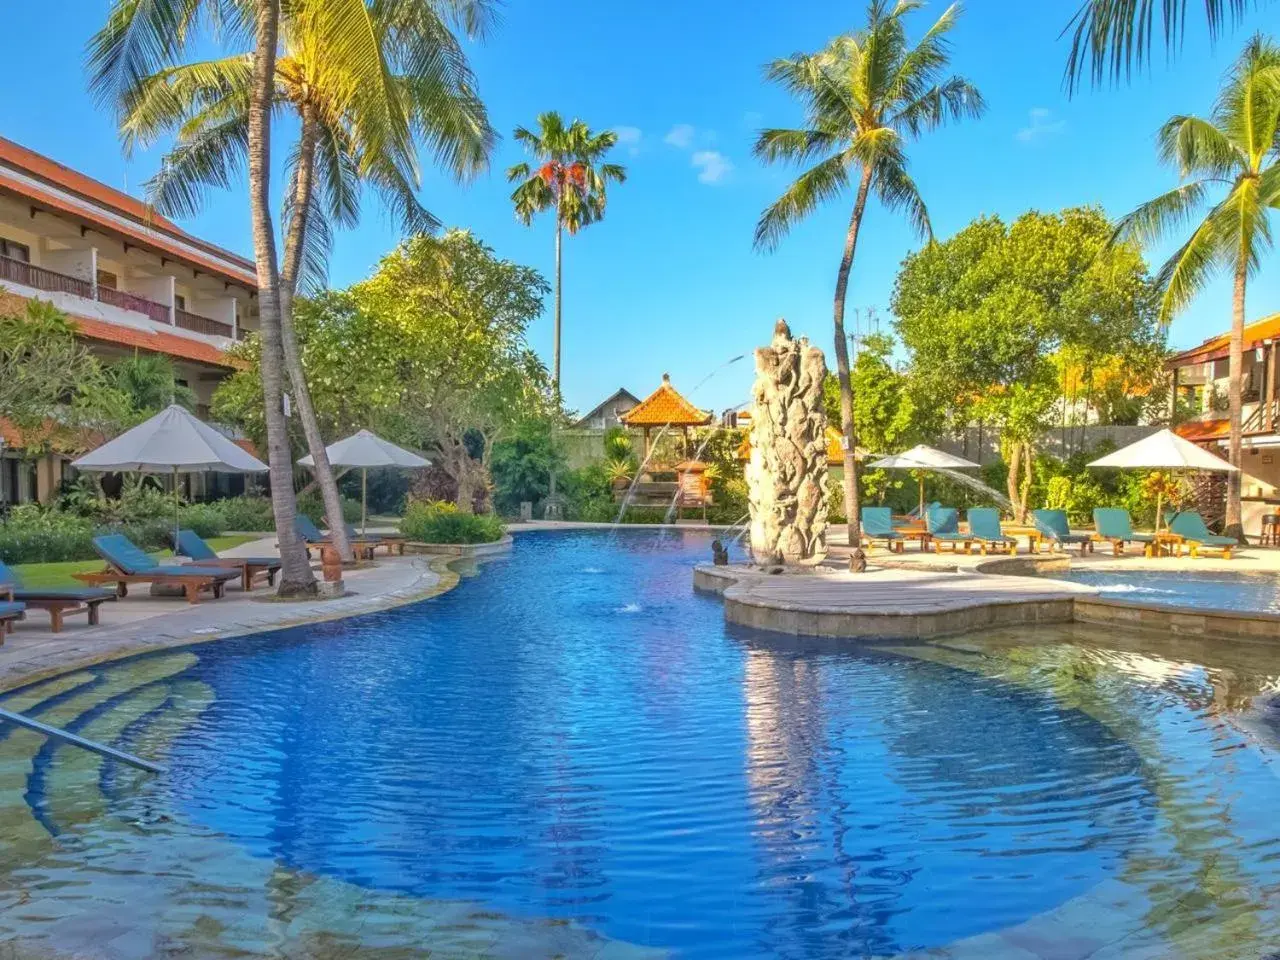 Swimming Pool in Bali Rani Hotel